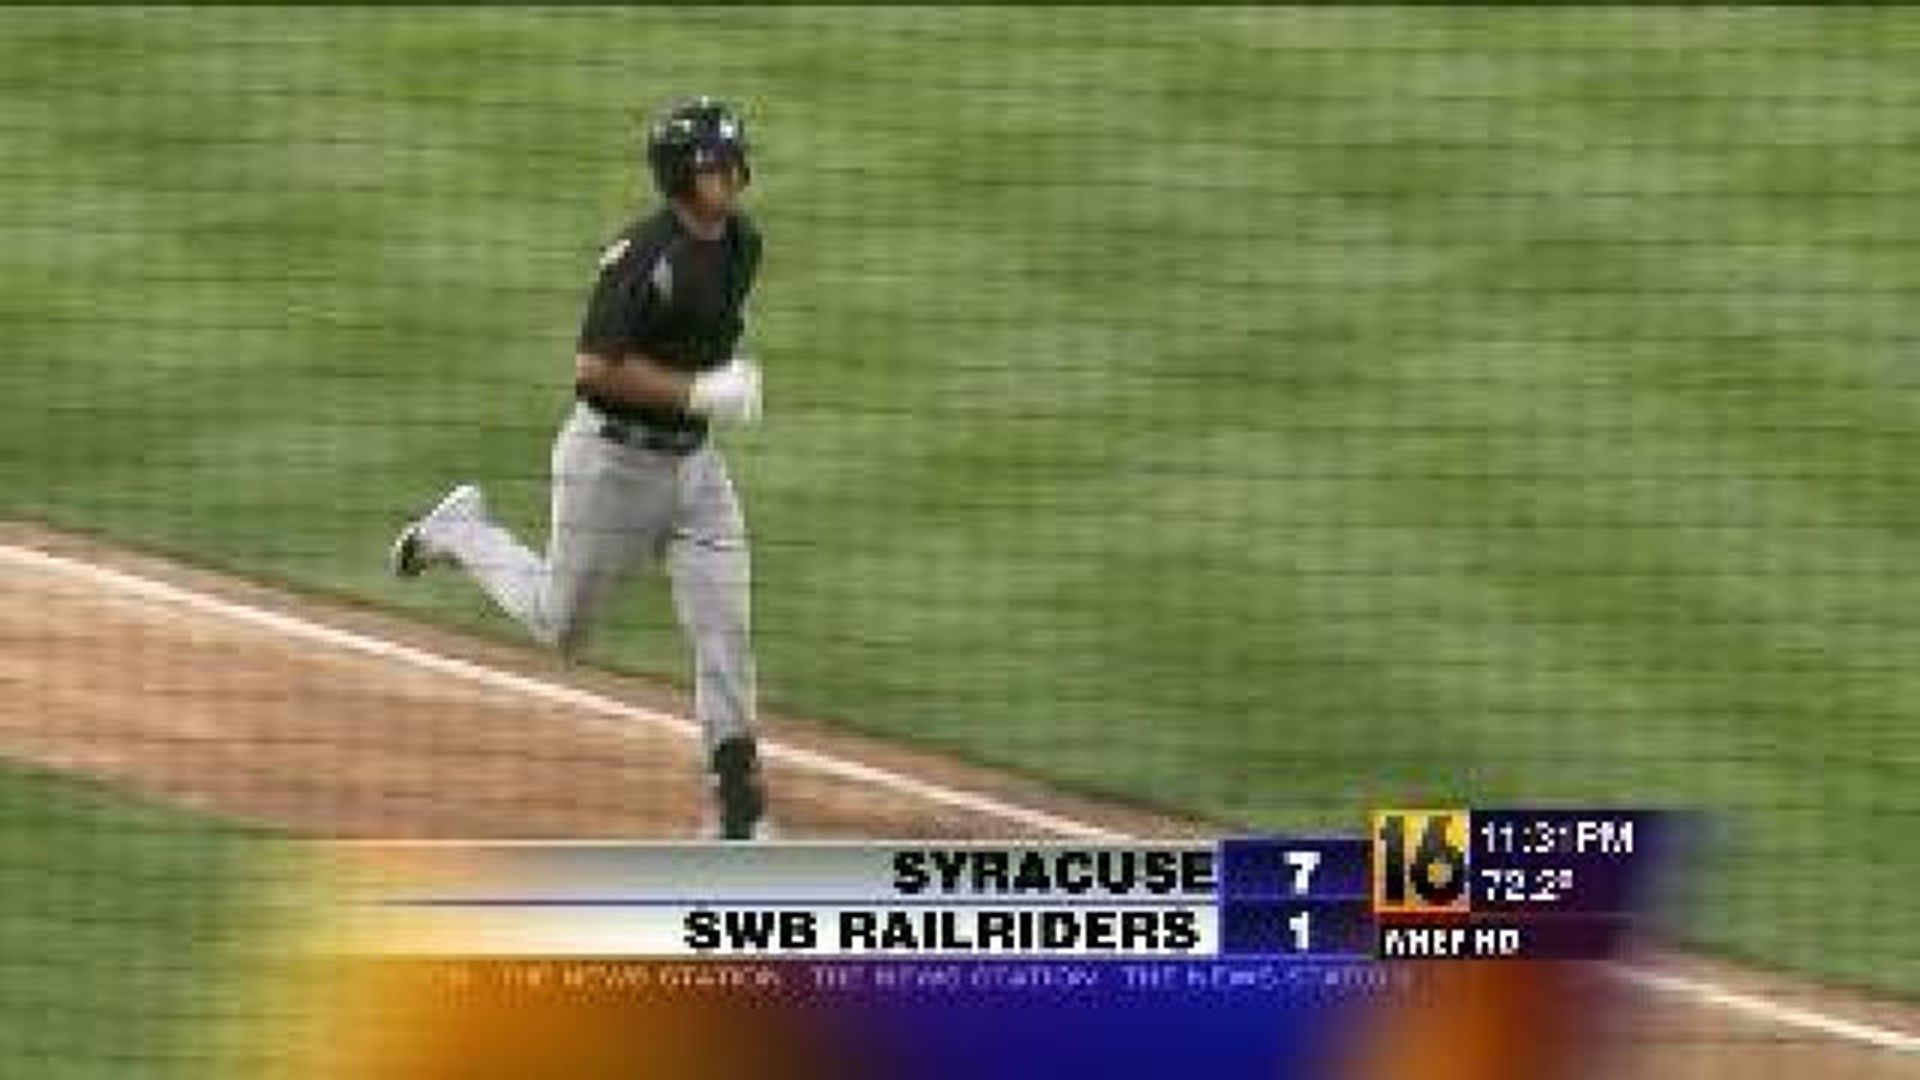 Syracuse Beats RailRiders 7-1